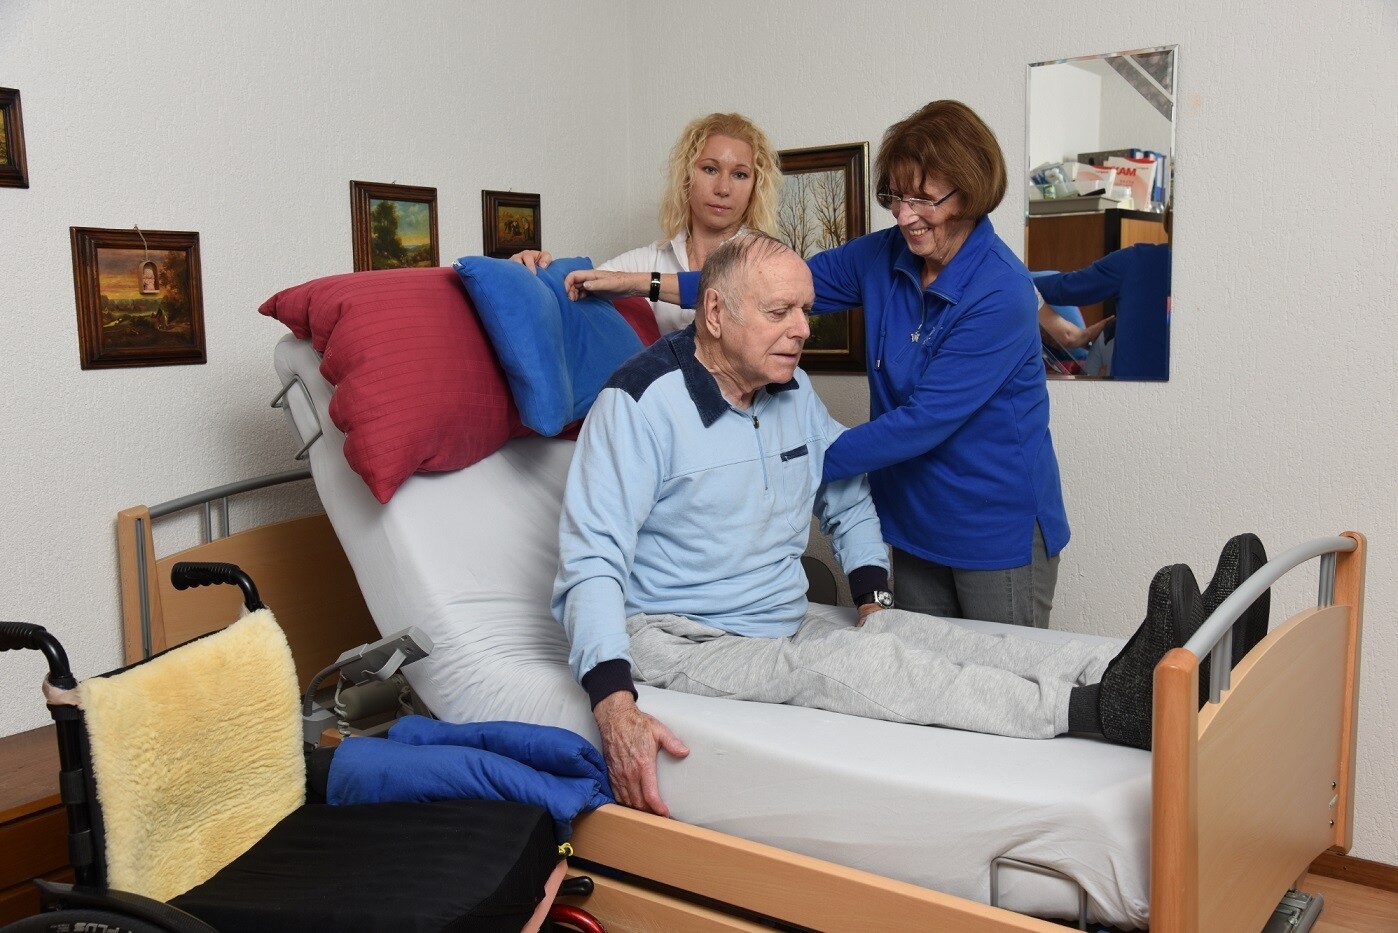 Deux femmes aident un homme âgé chez lui à se redresser dans son lit. Un fauteuil roulant se trouve à côté du lit.